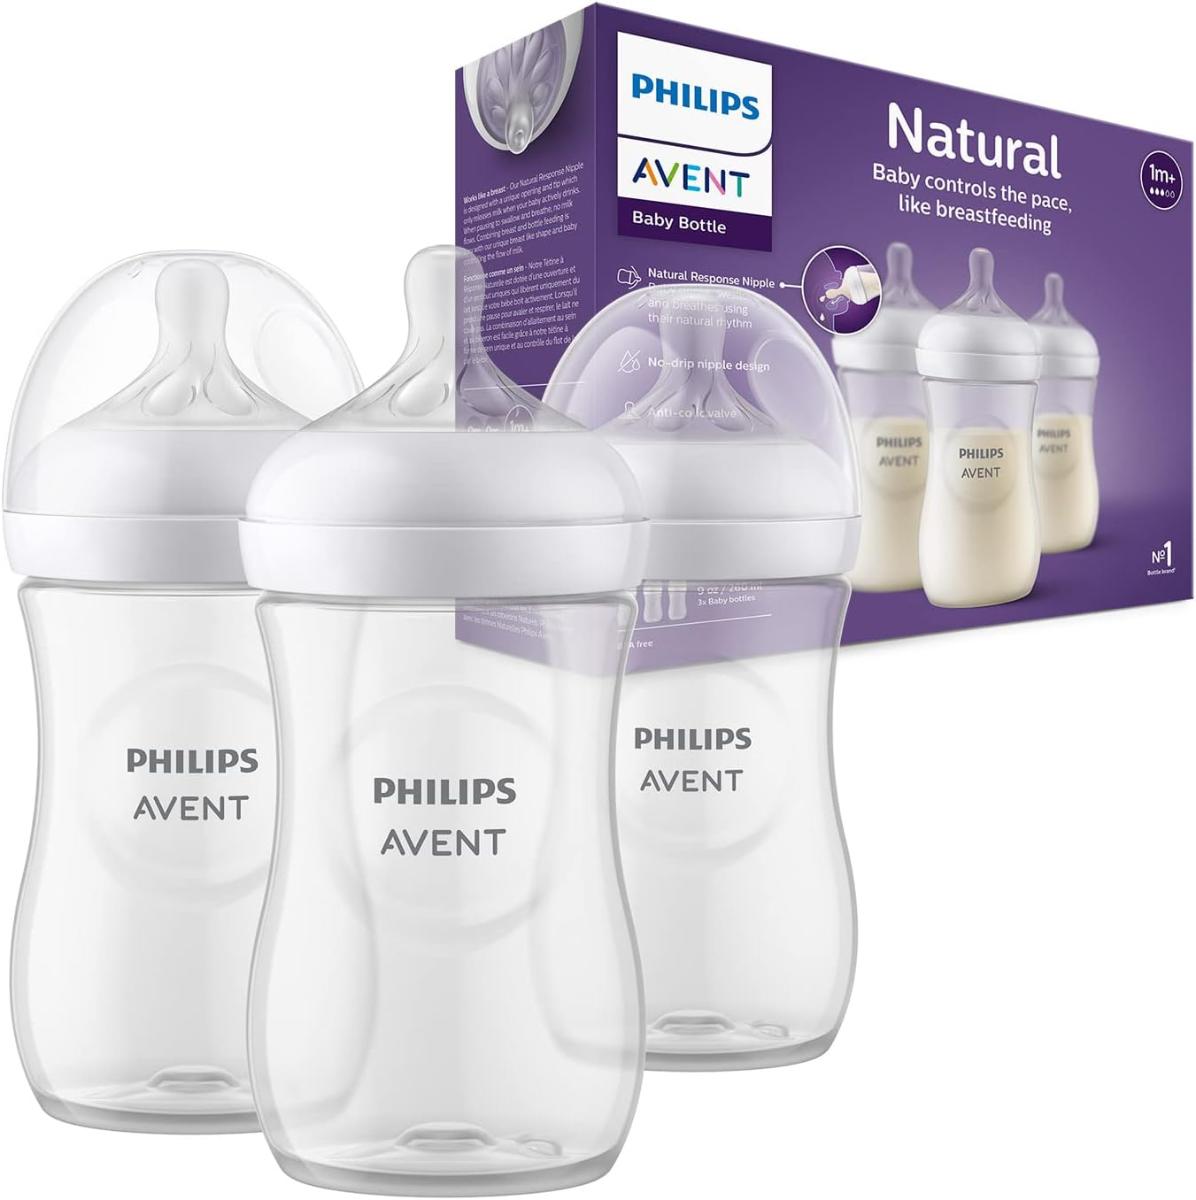 Philips Avent dojčenská fľaša Natural Response – 3 x 260ml - Starostlivosť o dojčatá a batoľatá